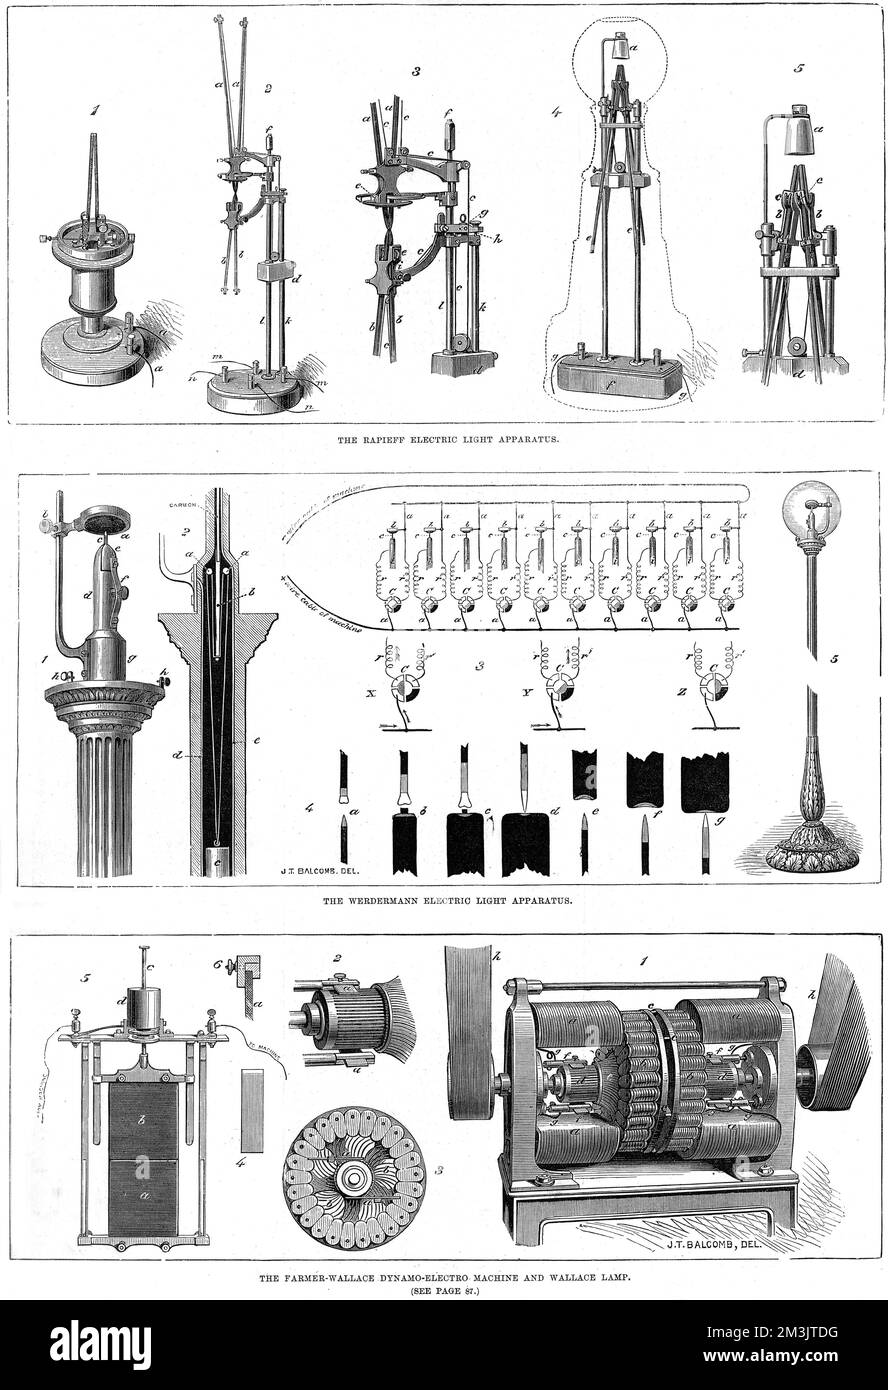 Diagramma che mostra gli apparecchi di illuminazione di Rapieff, Werdermann e Farmer-Wallace. L'avvento della luce elettrica nel 1870 da parte di Edison e Jablochkoff ha portato a molti diversi tentativi di raffinare e sviluppare le invenzioni esistenti. 1879 Foto Stock